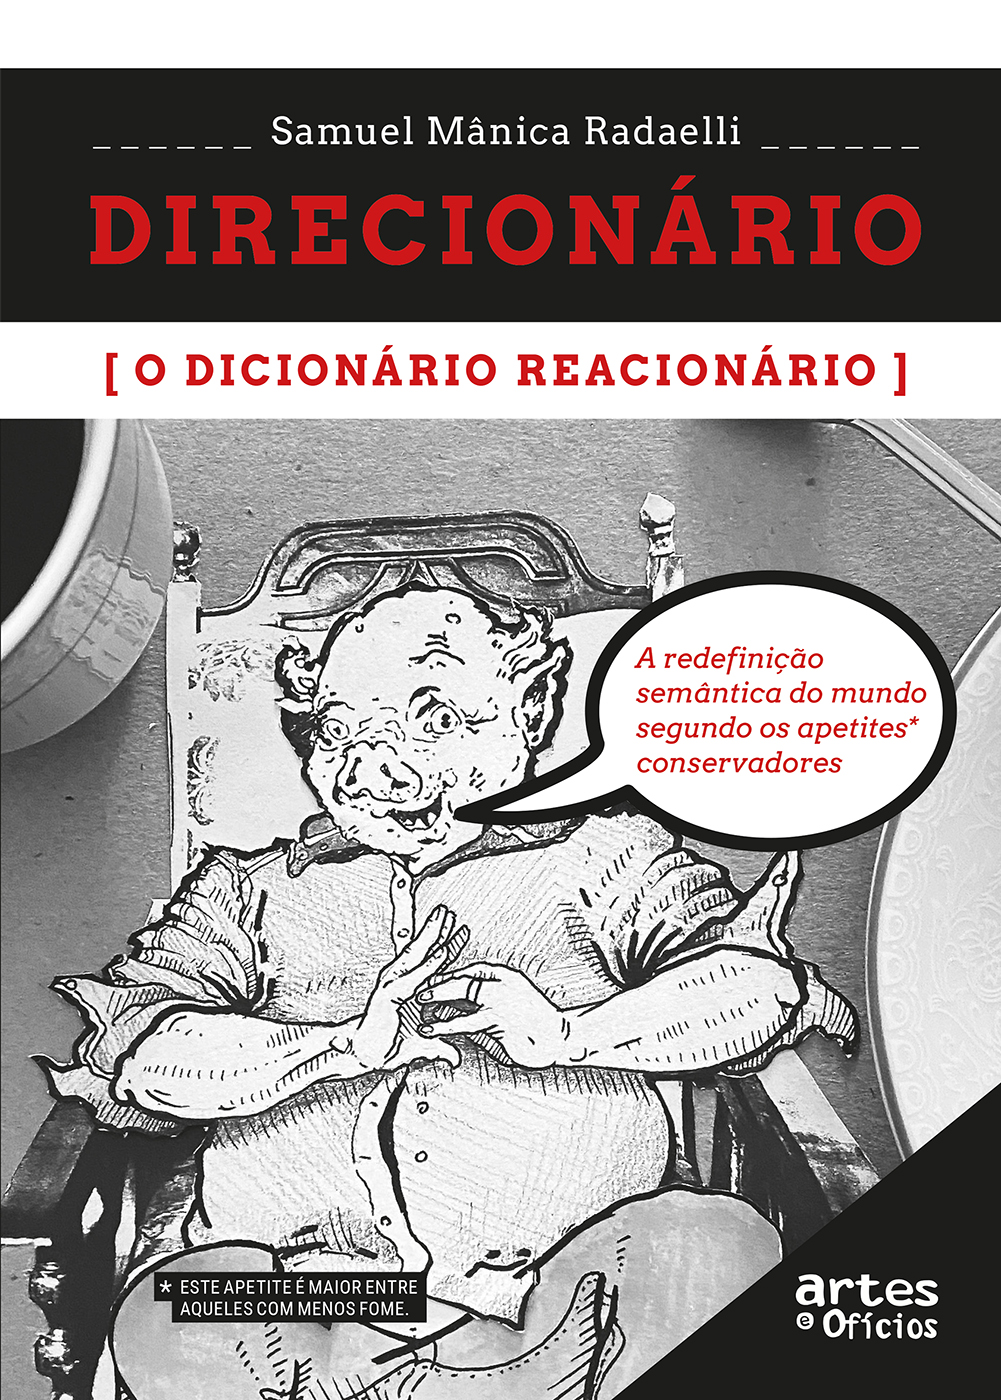 Direcionário, o dicionário reacionário